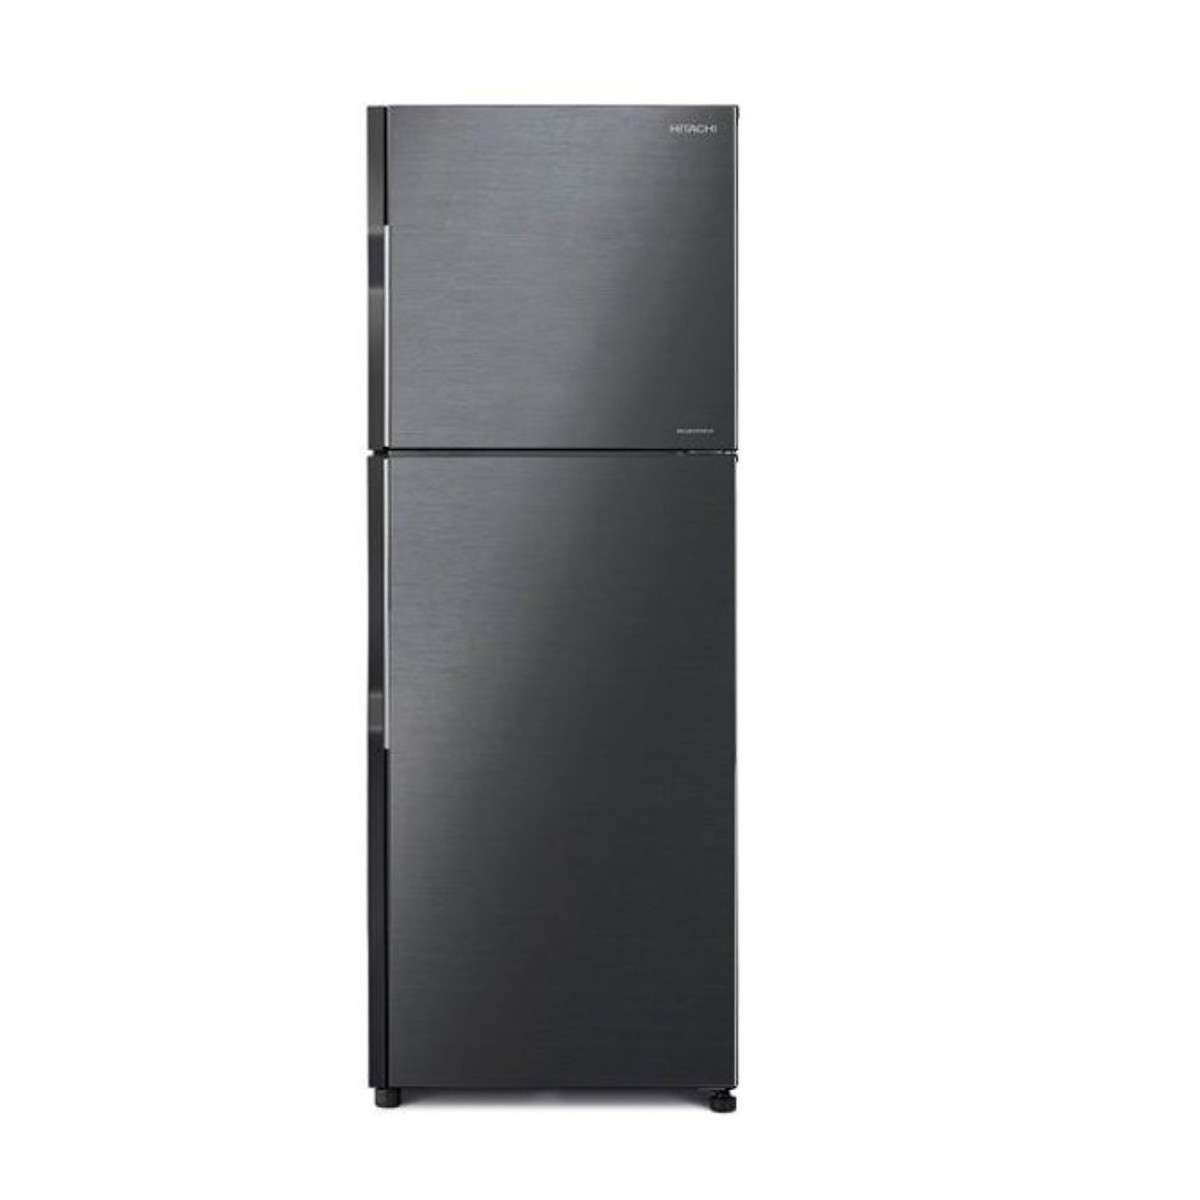 R-H200PGV7 tủ lạnh 203 lít